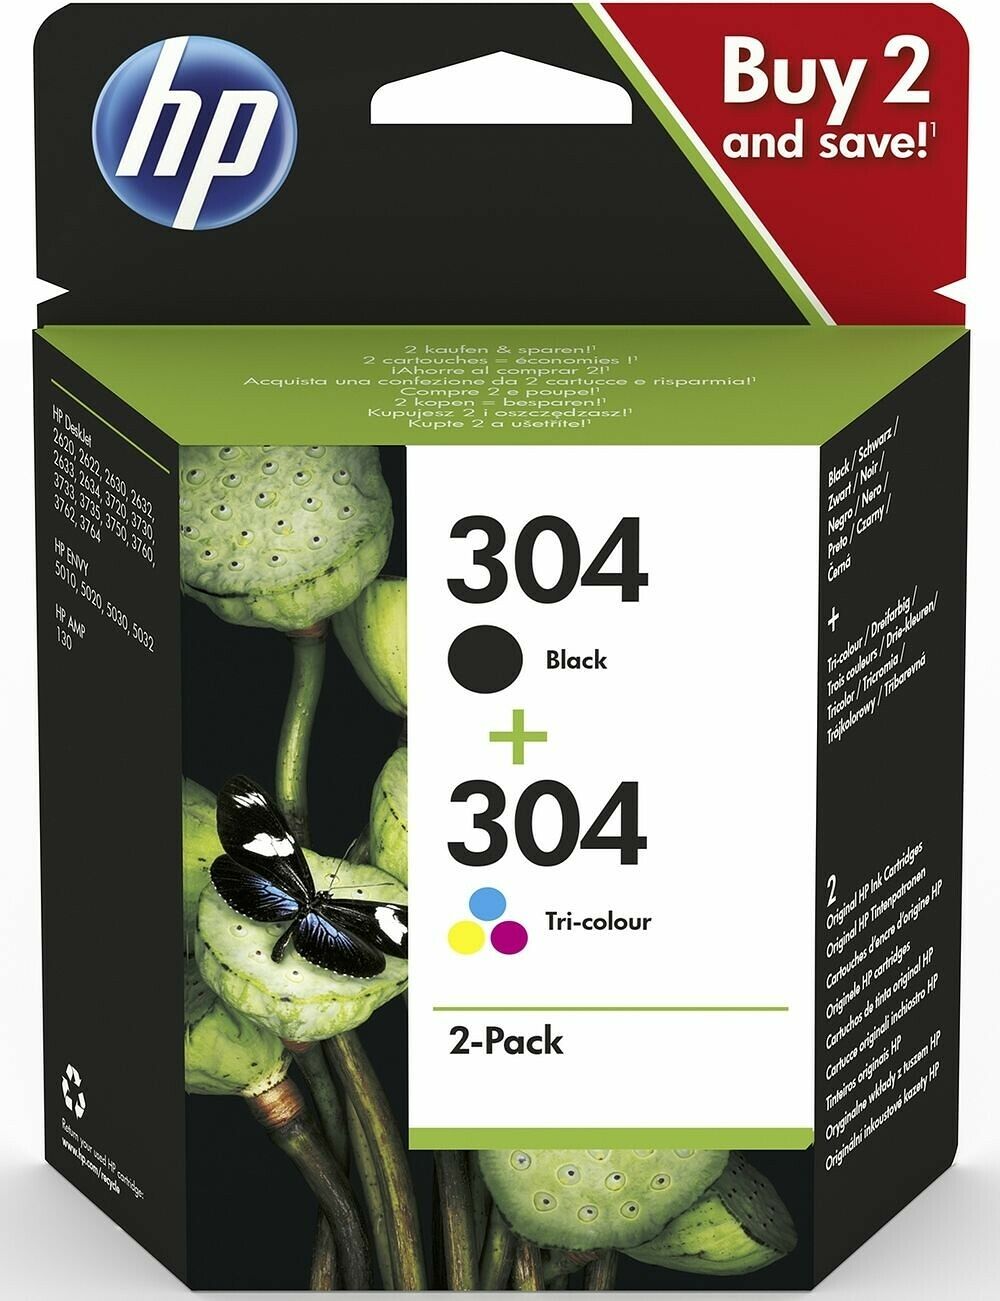 HP 62 Pack de 2 Cartouches d'Encre Noire et Trois Couleurs